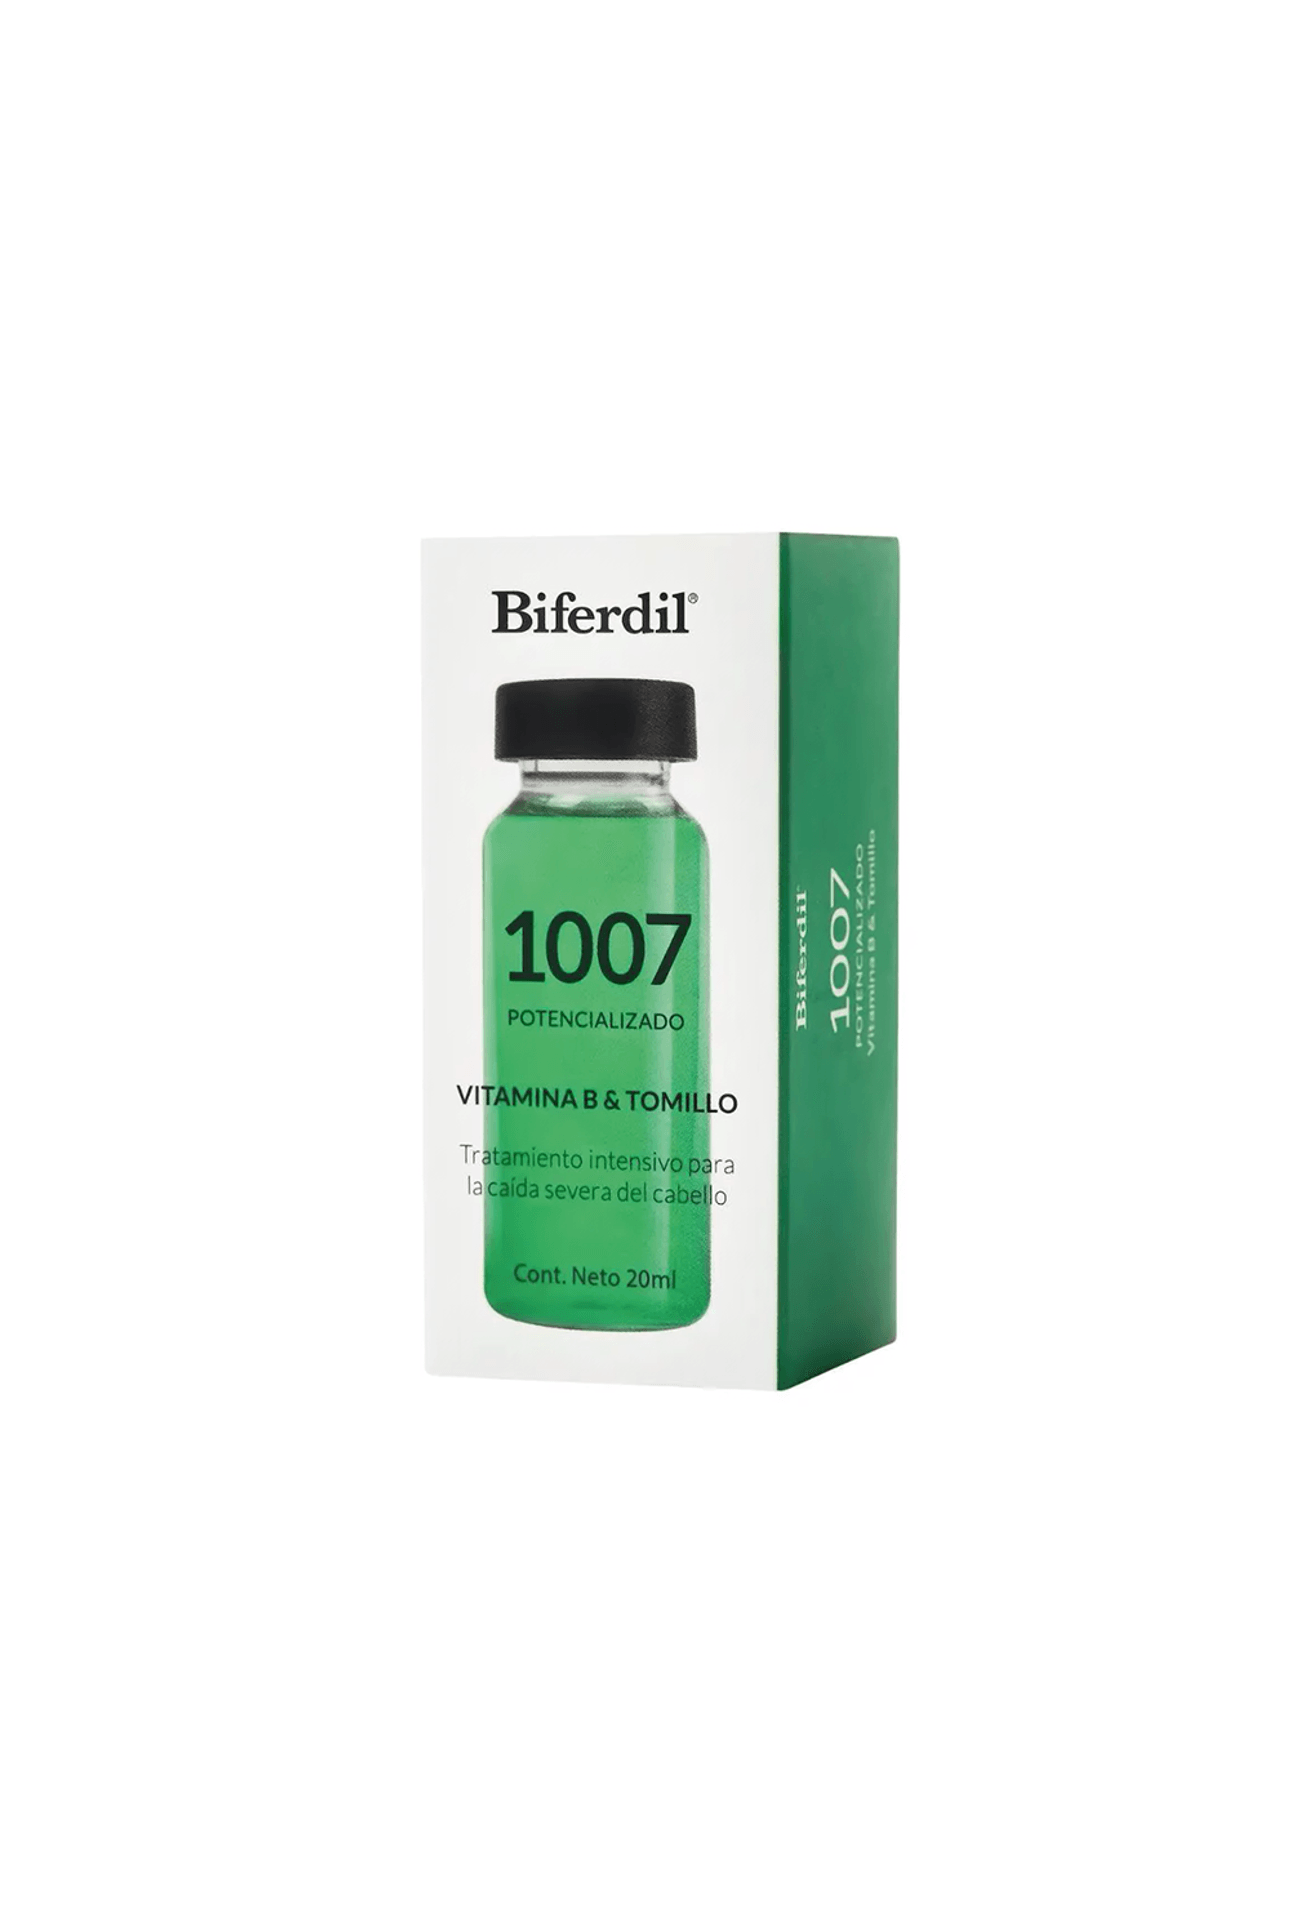 Biferdil-Ampolla-Tratameinto-Potencializado-x-20-ml-7791001011326_img1